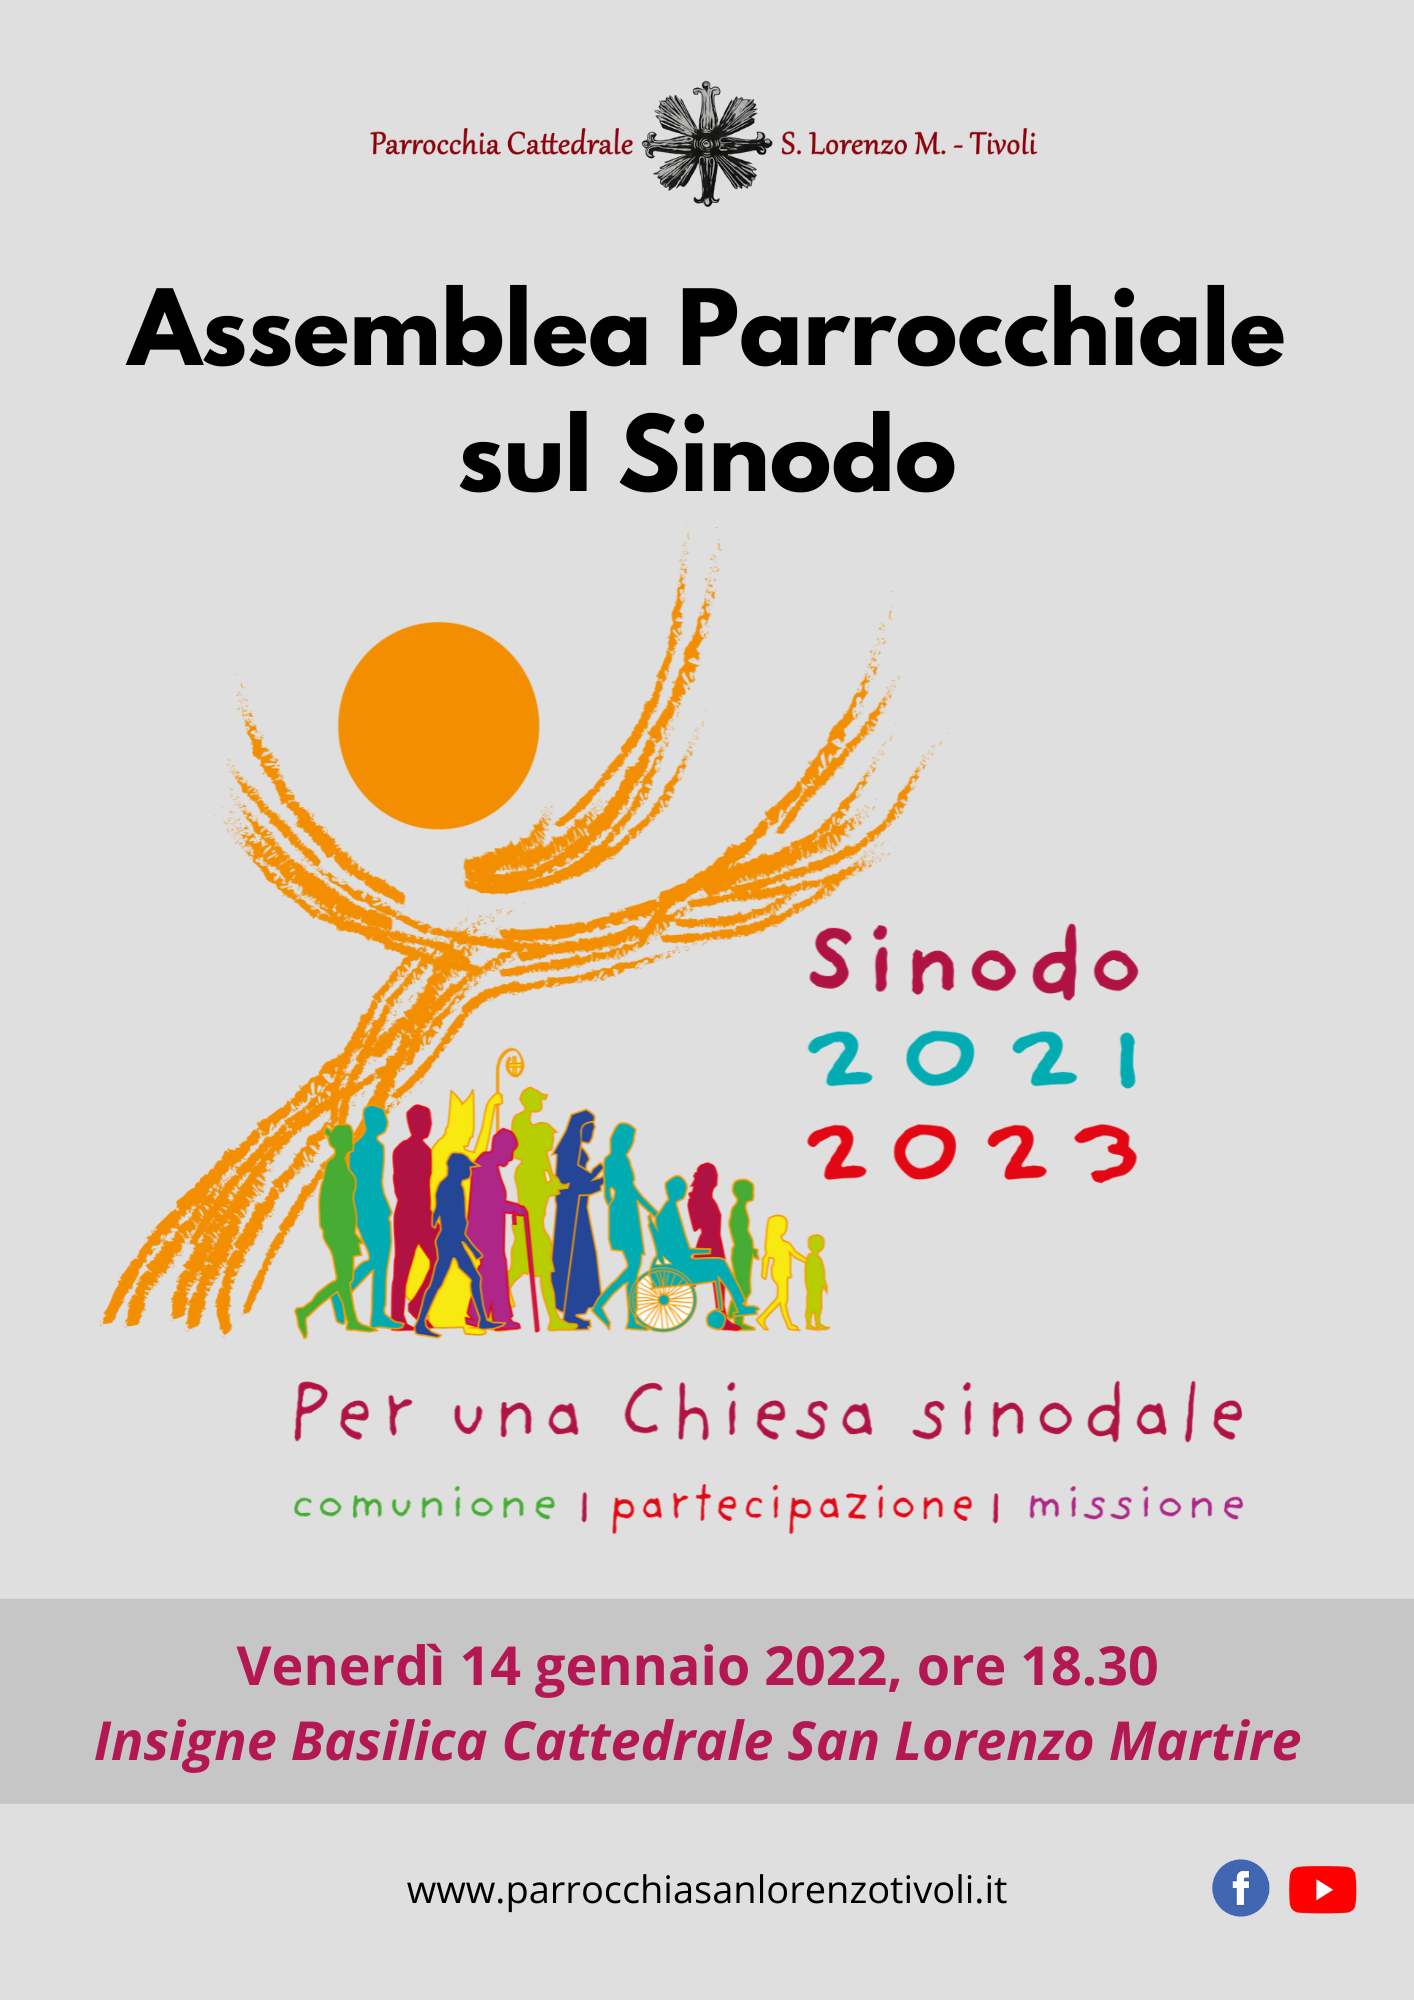 Assemblea Parrocchiale sul Sinodo il 14 gennaio 2022